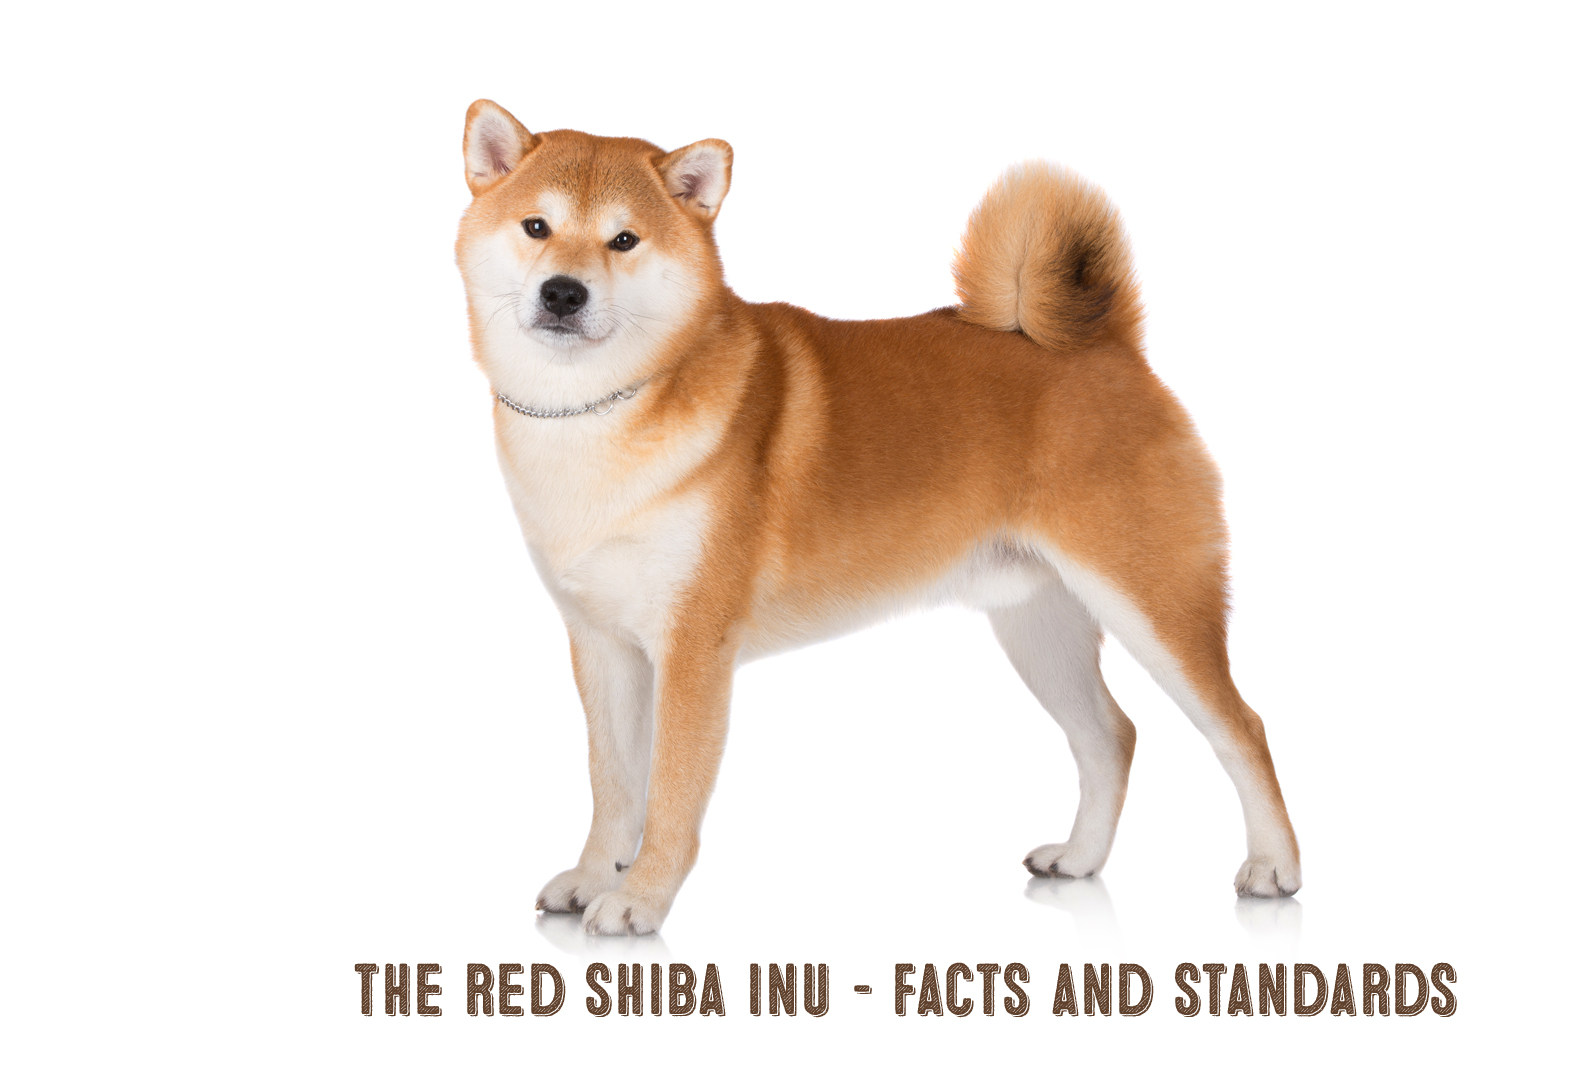 The Red Shiba Inu My First Shiba Inu